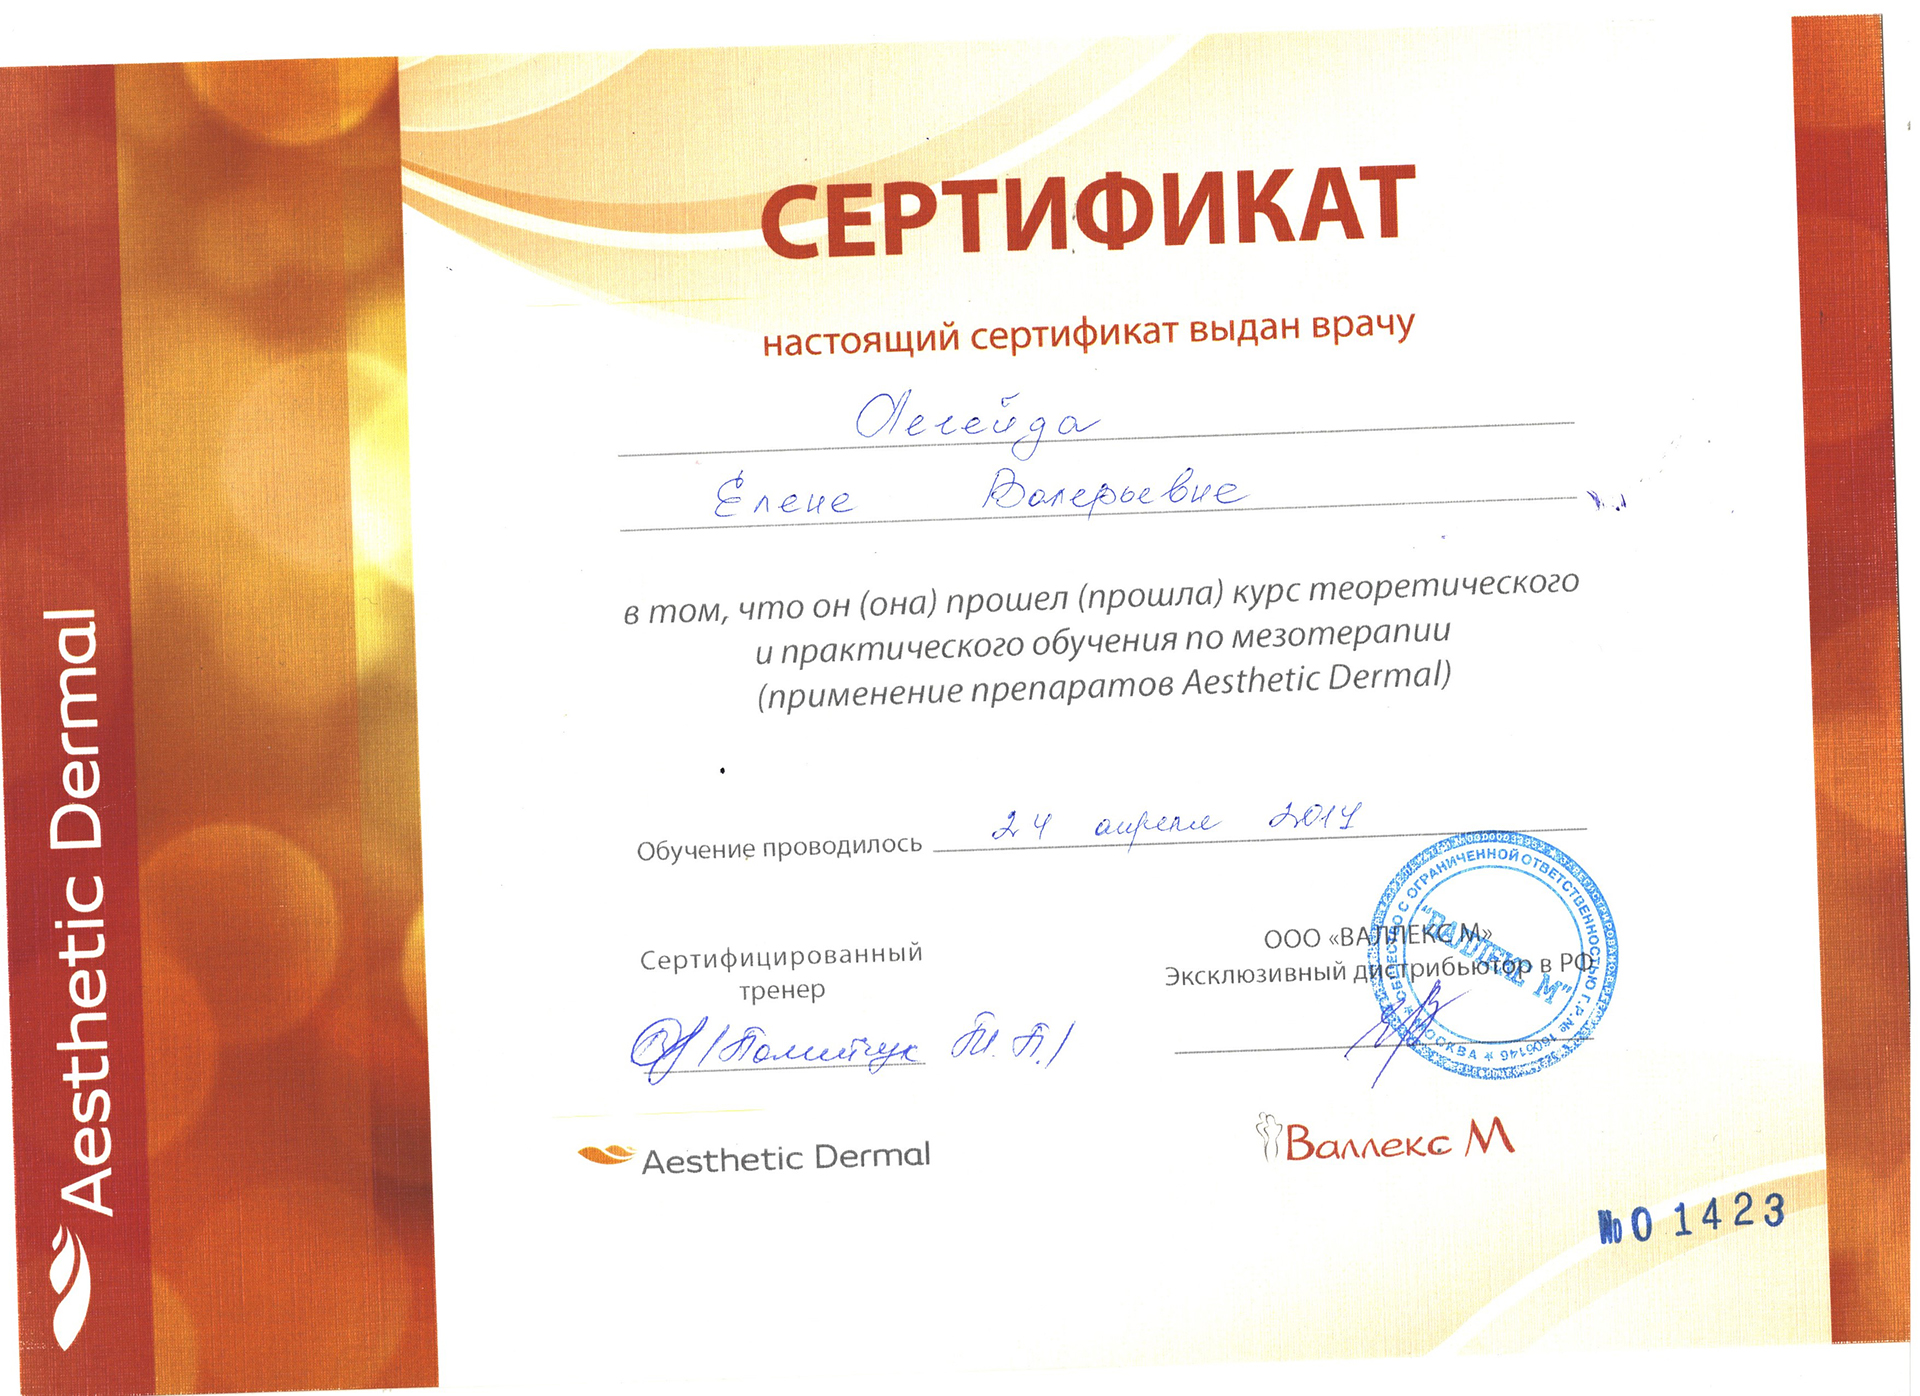 Сертификат — Применение препаратов Aesthetic Dermal. Легейда Елена Валерьевна